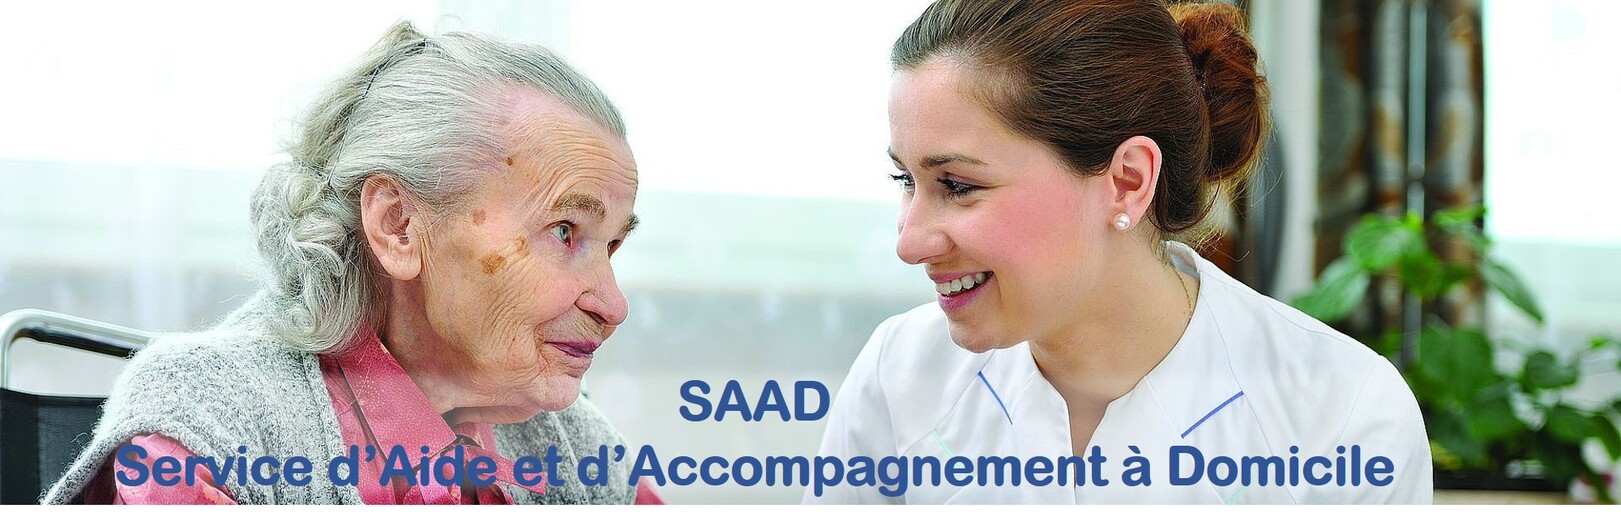 Service d'aide et d'accompagnement à domicile (SAAD)